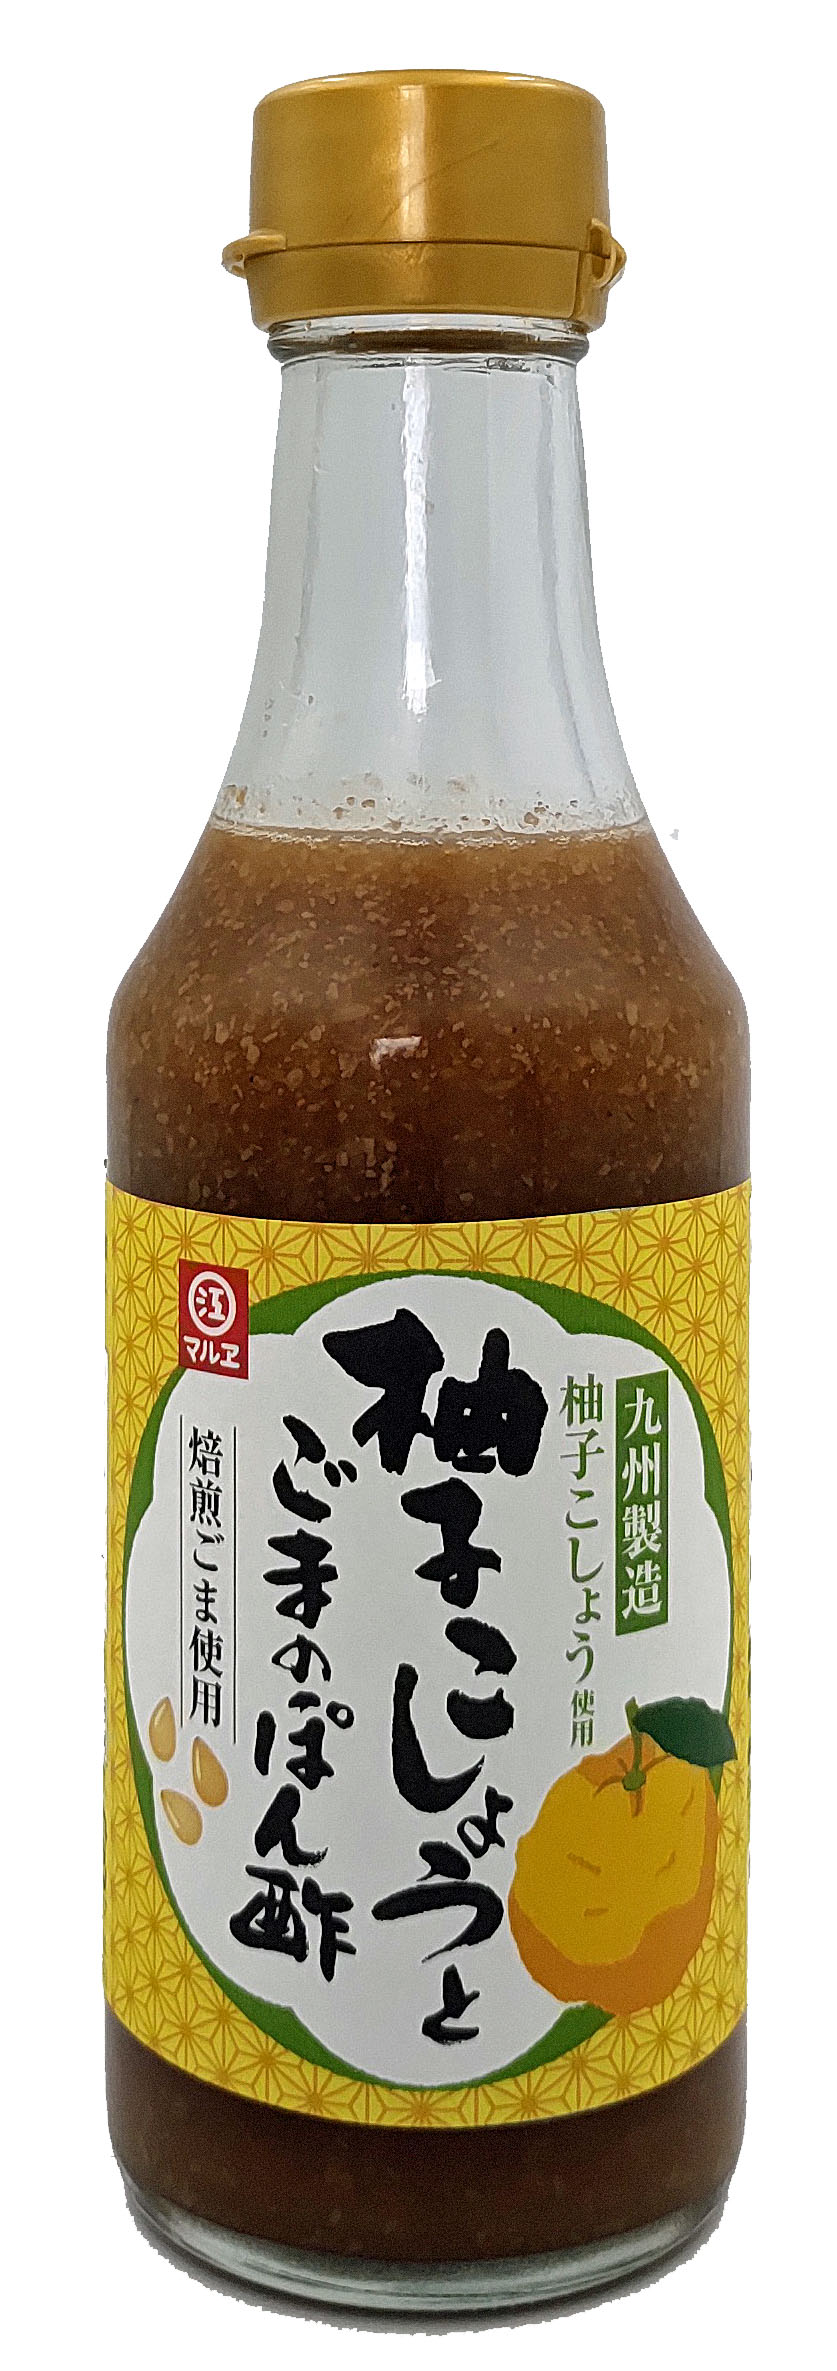 マルヱ醤油 マルエ醤油 柚子こしょうとごまのぽん酢 250ml ポン酢の商品画像